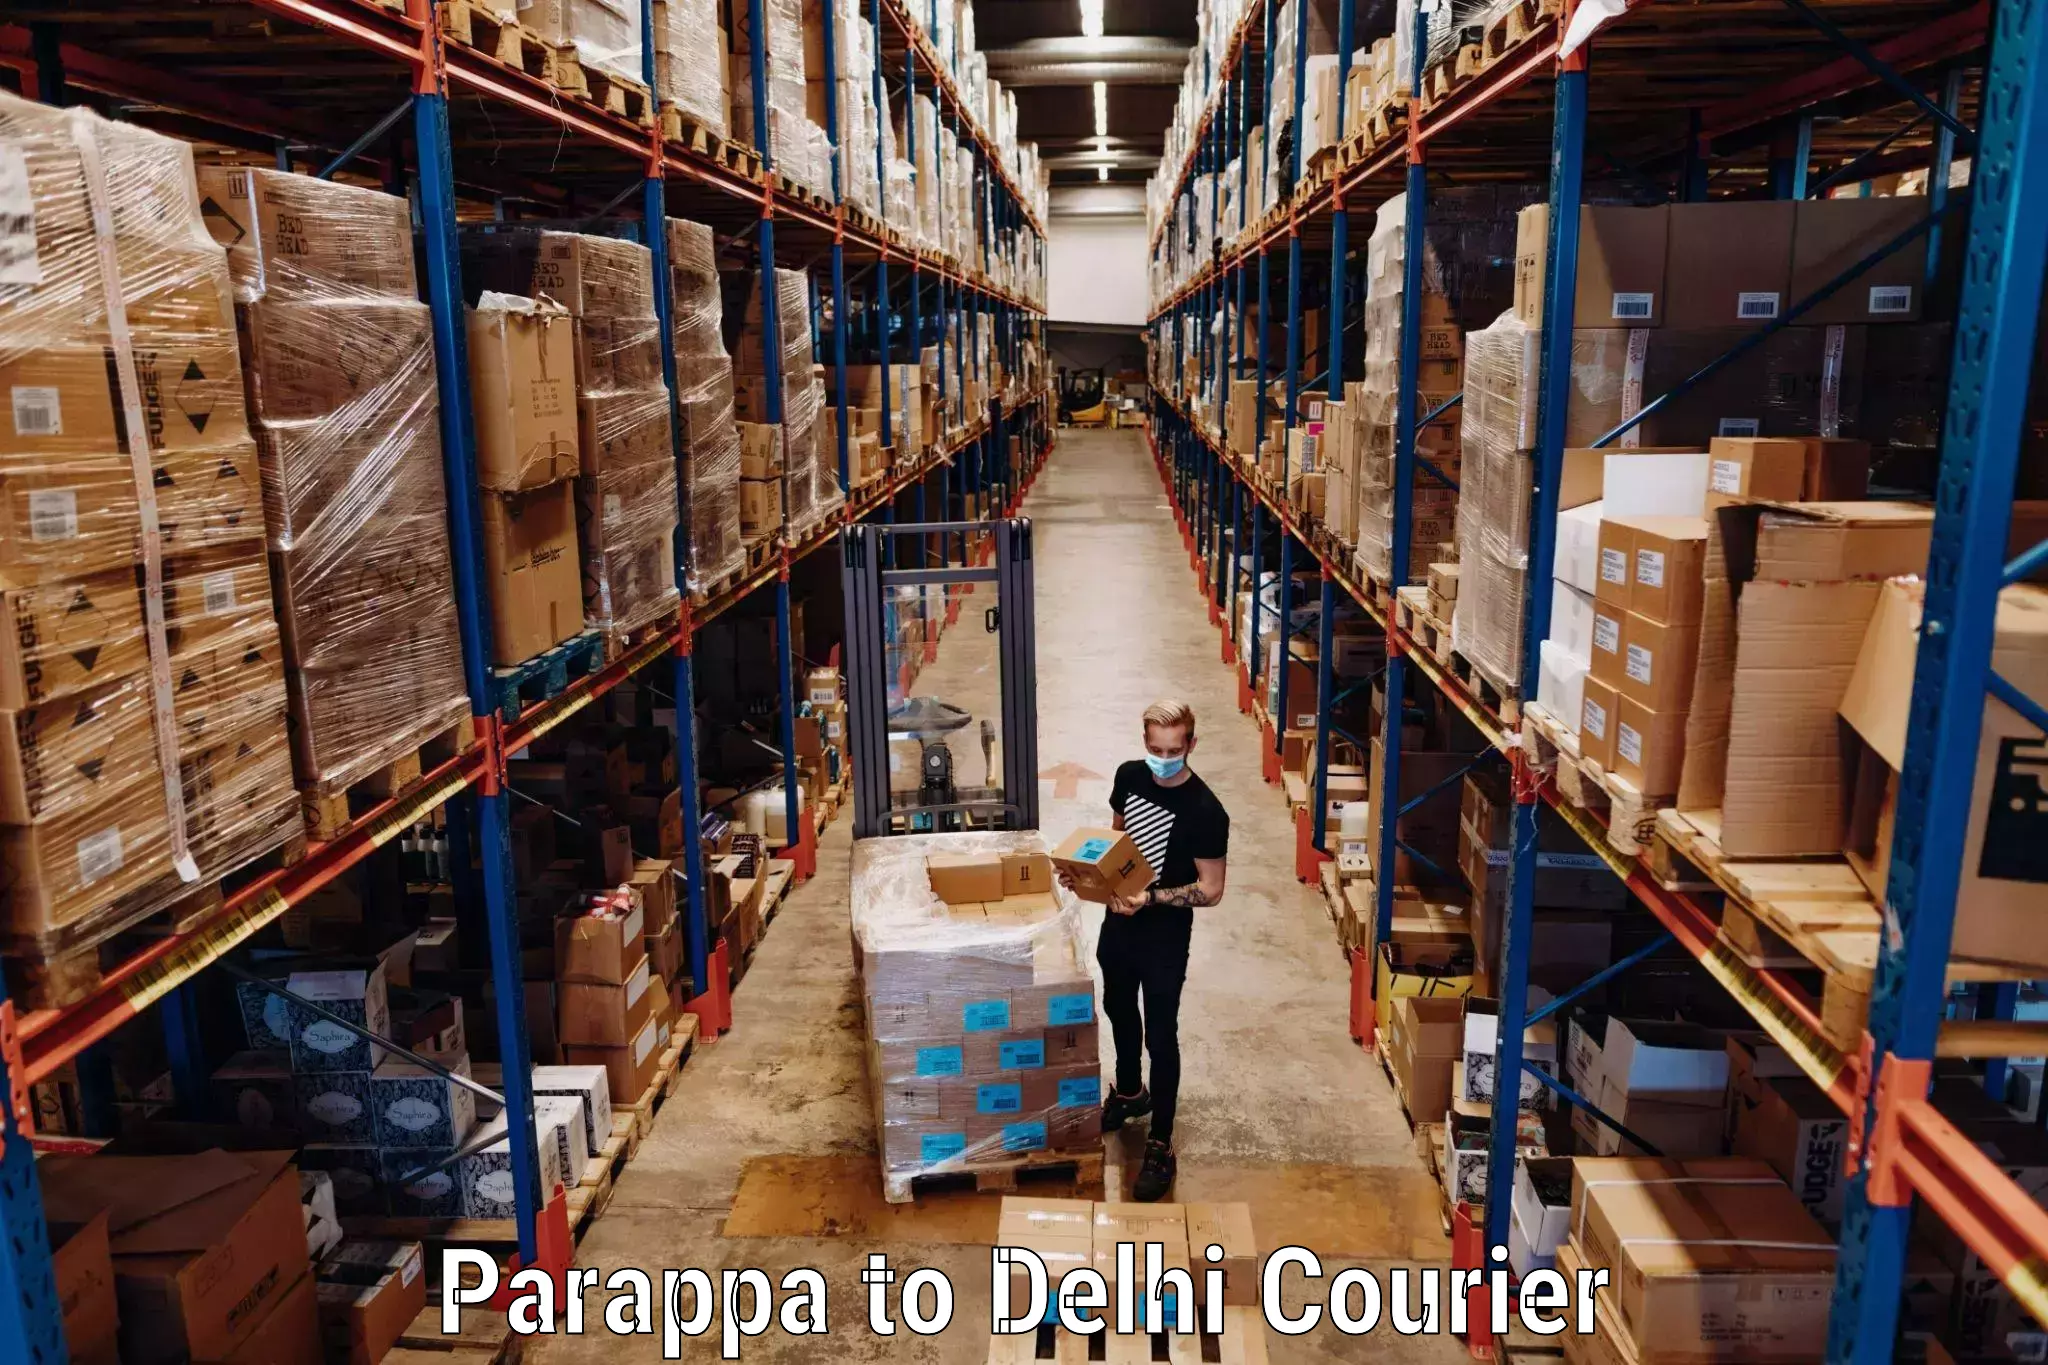 Baggage relocation service Parappa to IIT Delhi